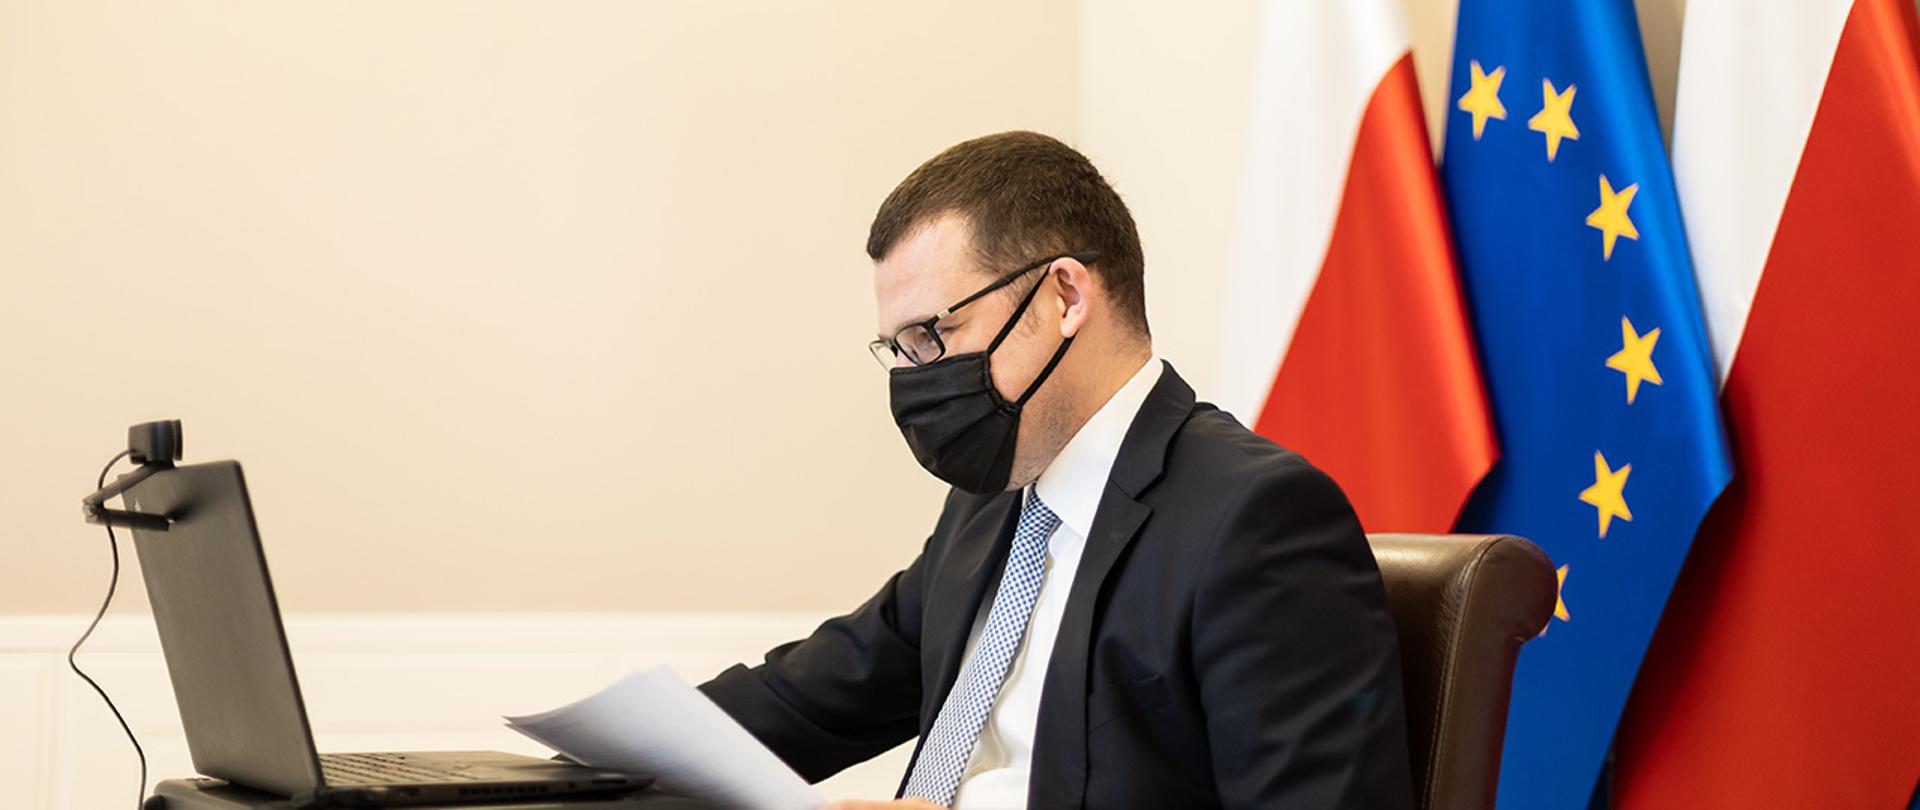 Na zdjęciu widać wiceministra Pawła Szefernakera siedzącego przed komputerem.